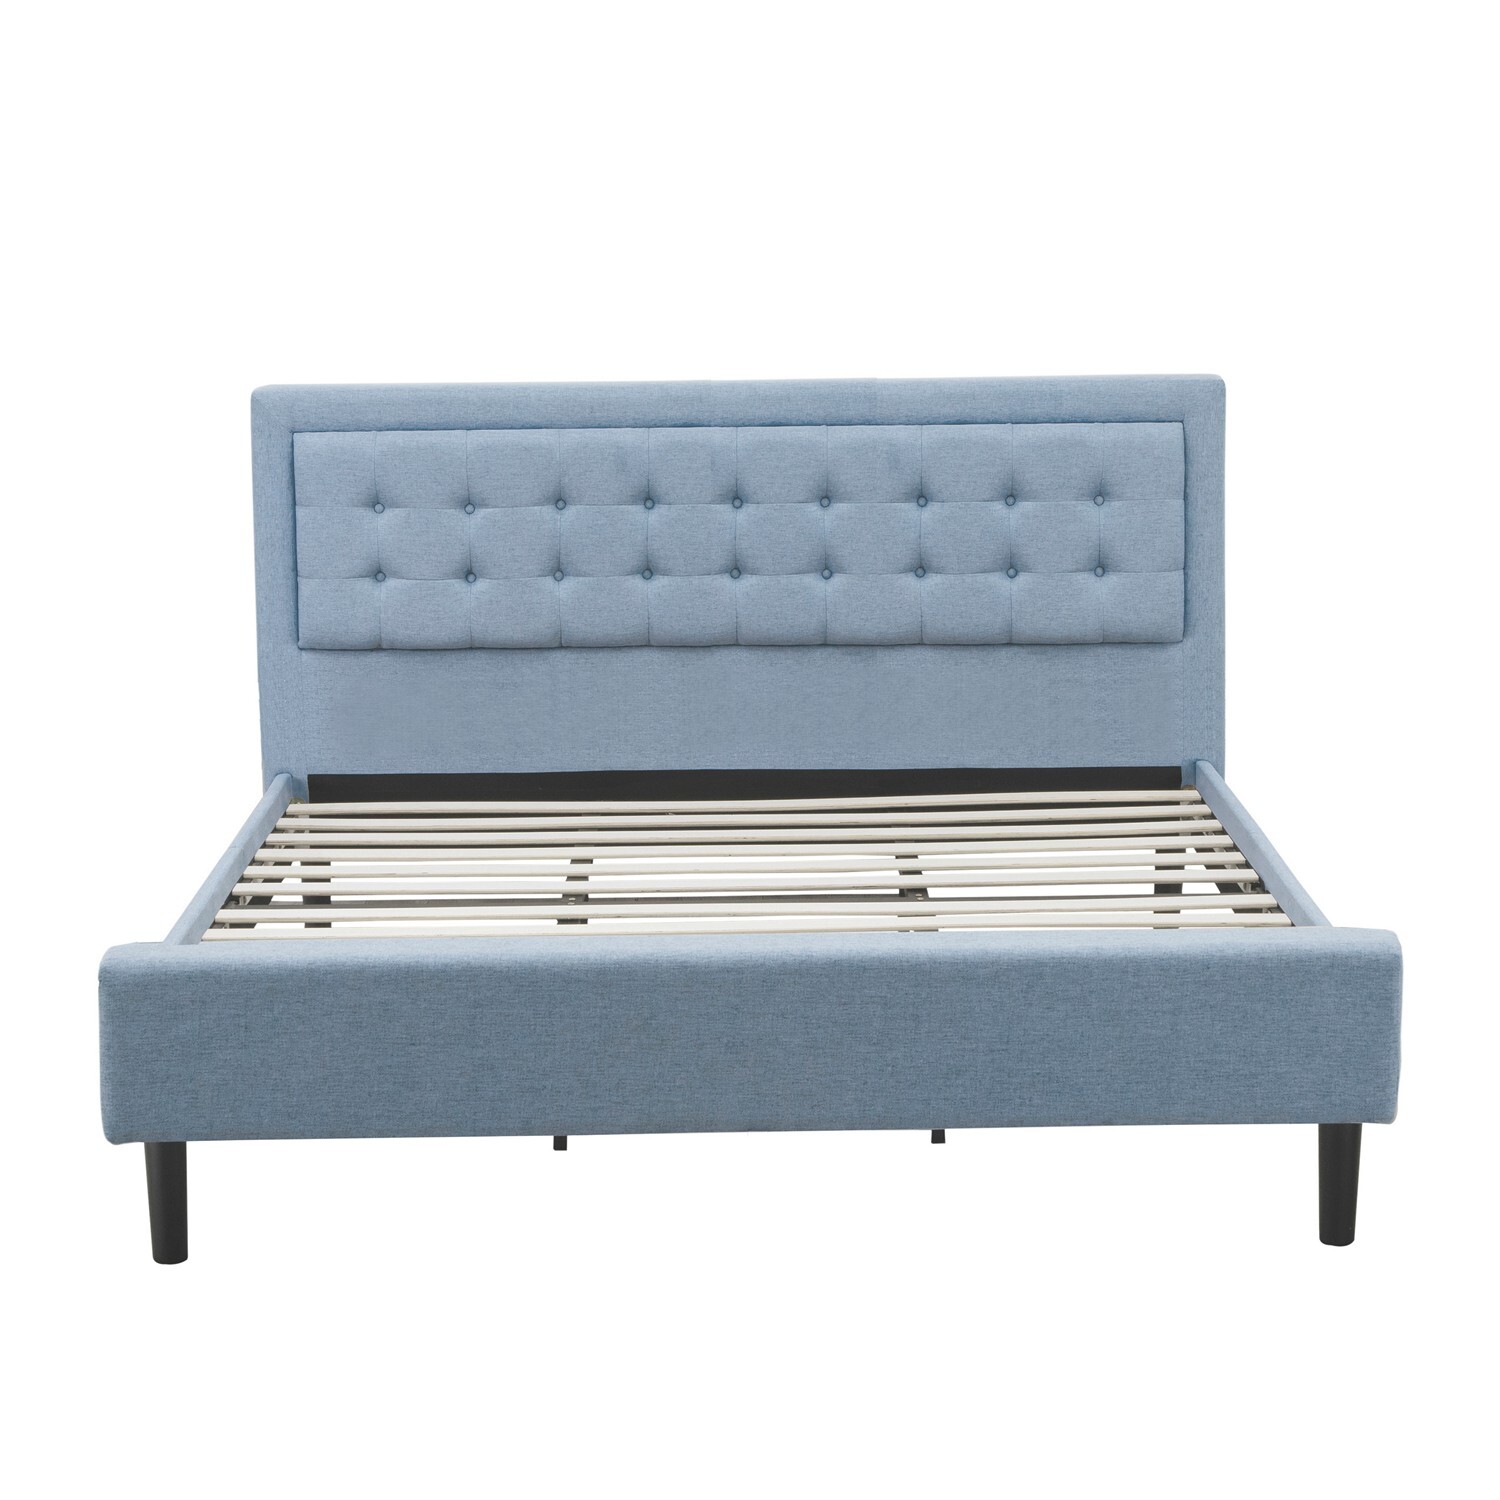 East West Furniture 2-piece Wood Fannin King Bedroom Set in Denim Blue - image 3 of 5